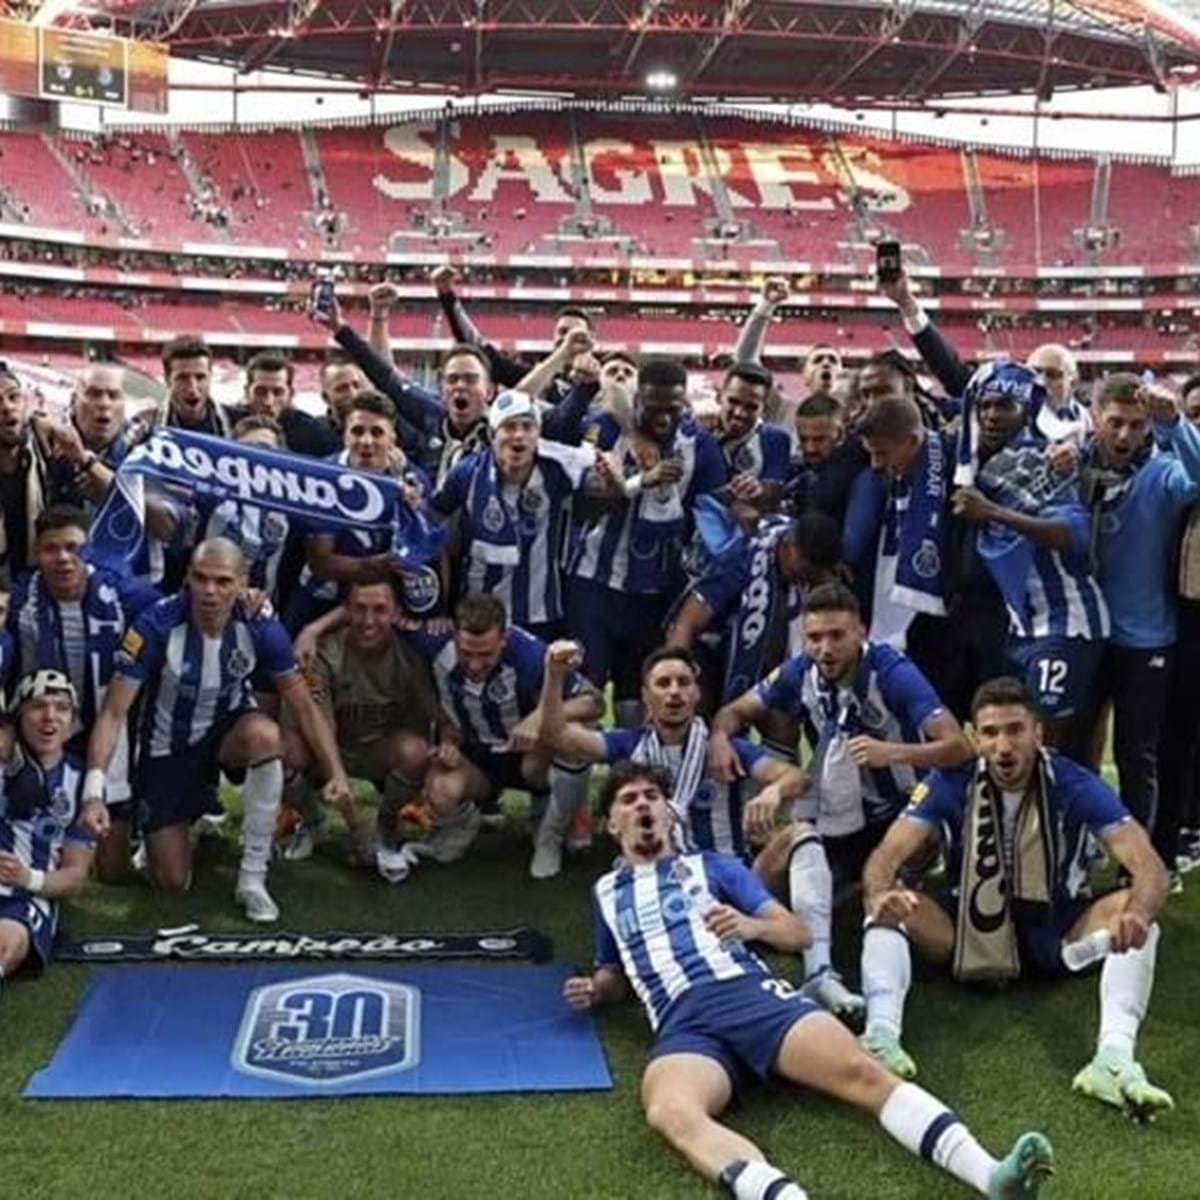 FC Porto 'ganha' dois títulos de campeão mundial de clubes -  FC Porto - Jornal Record